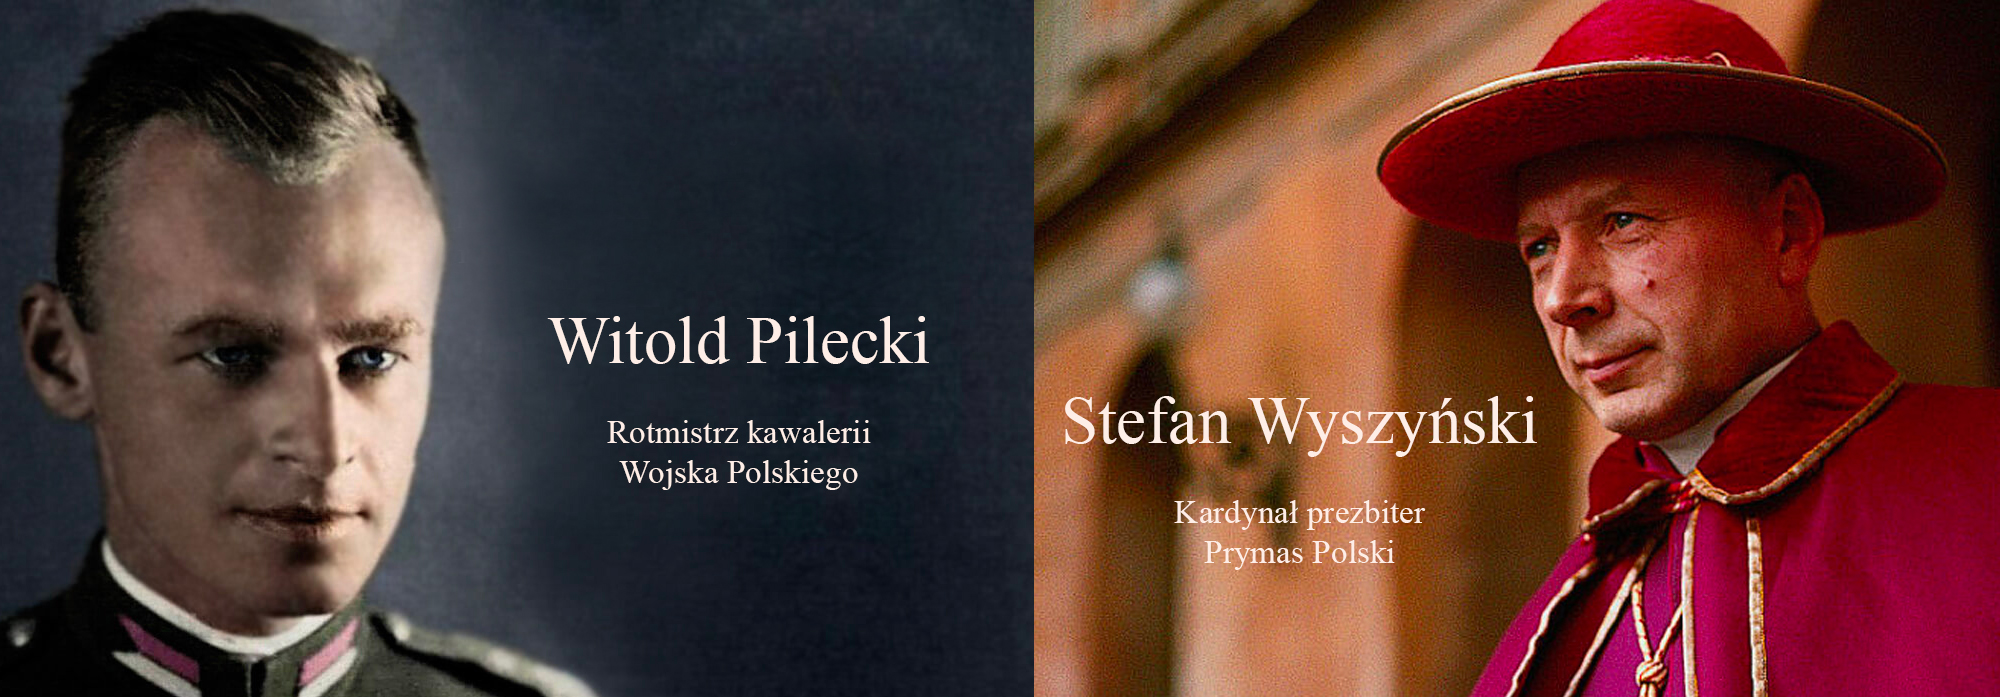 Stefan Wyszyński i Witold Pilecki